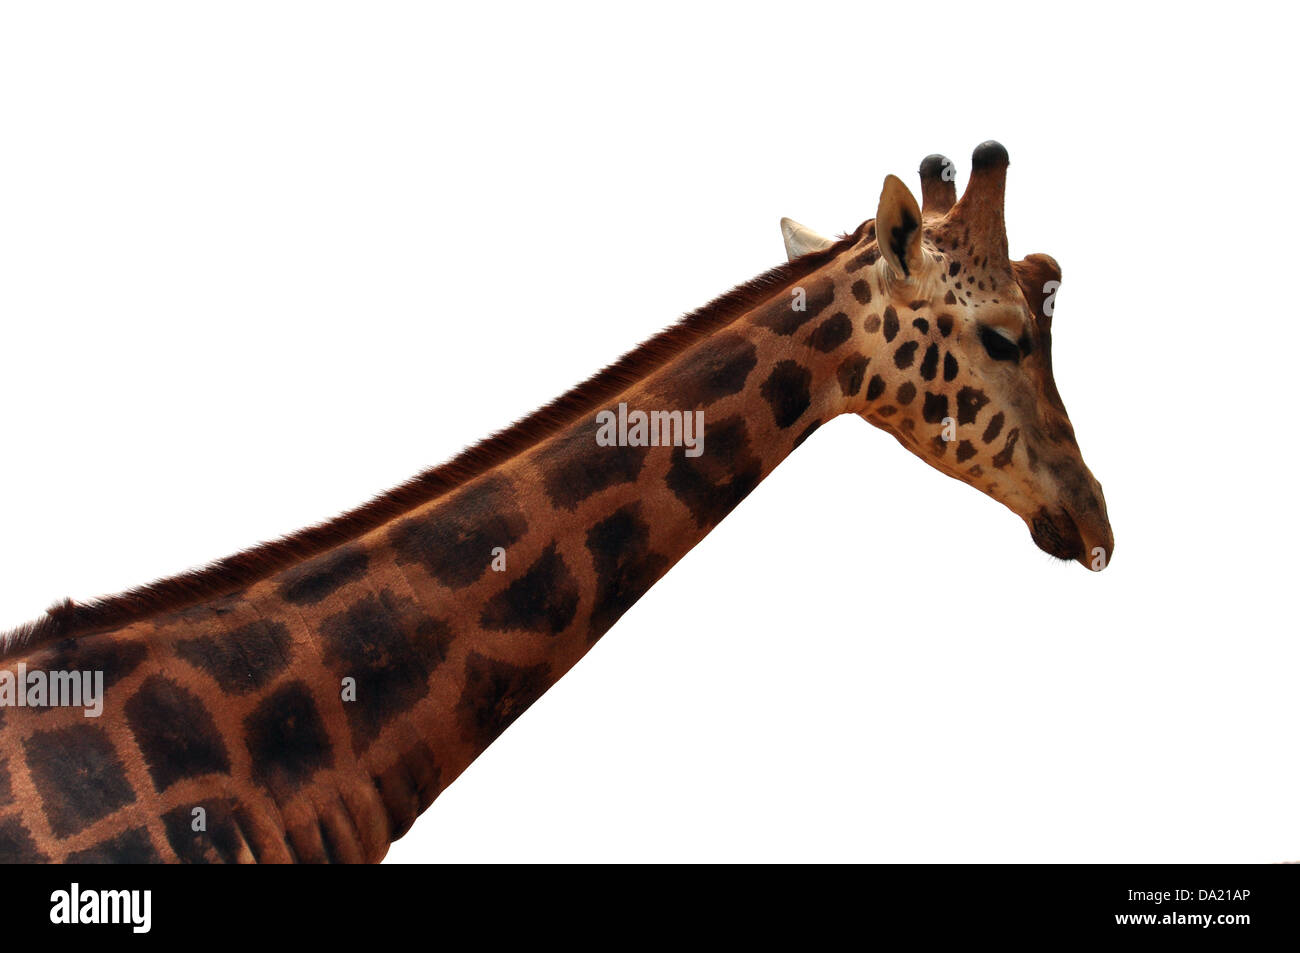 La tête et le cou de girafe Baringo détail sur fond blanc. Animal en voie de disparition. Banque D'Images